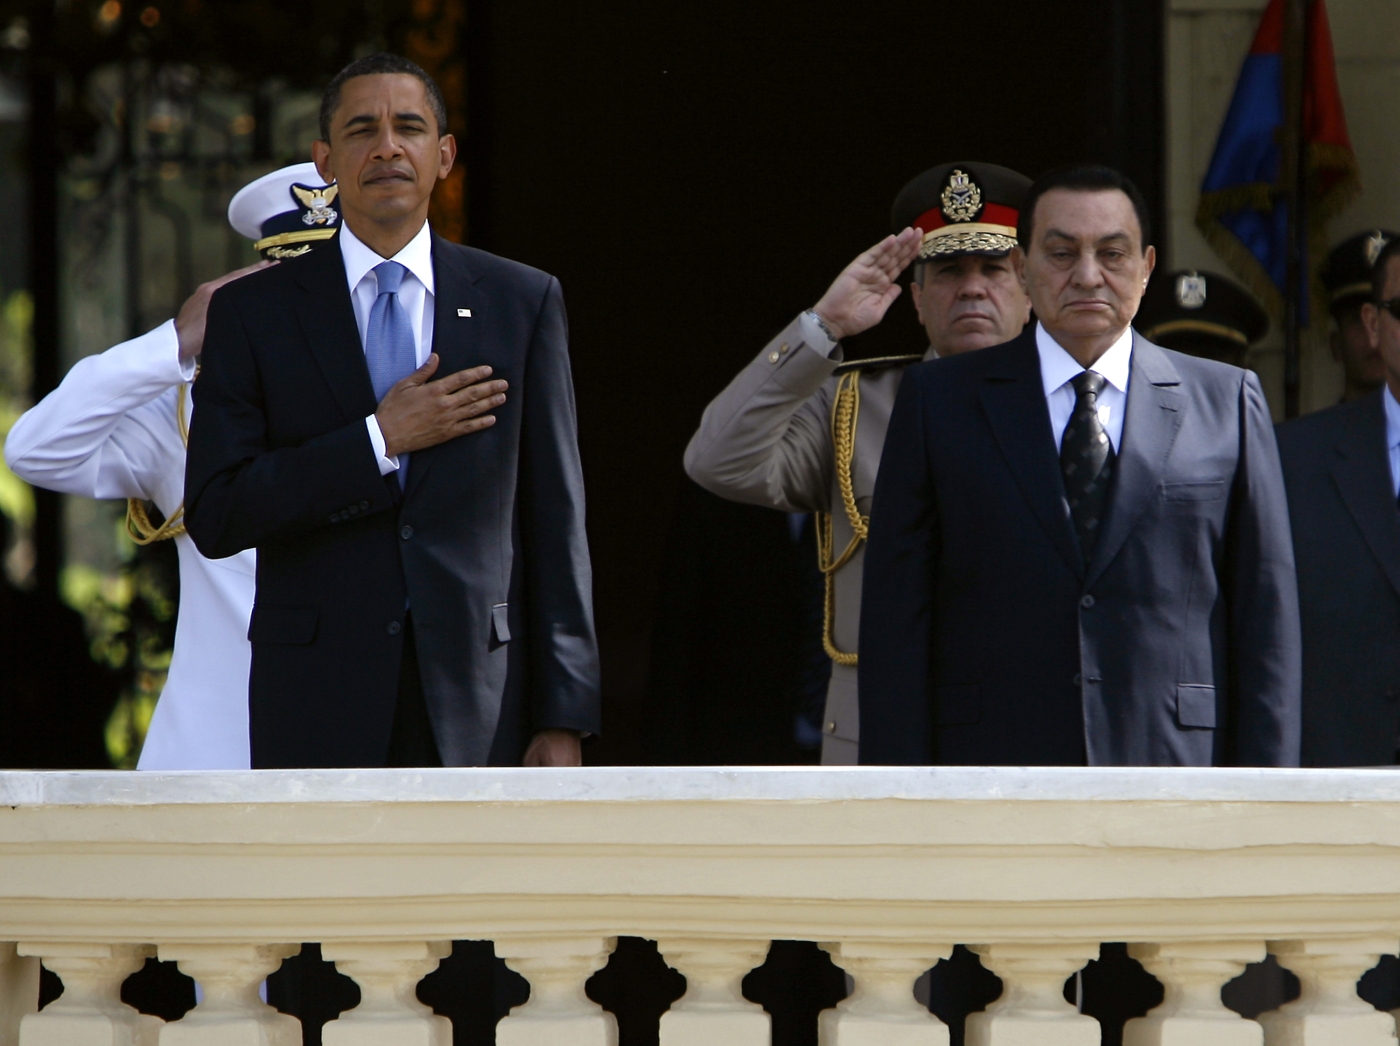 Le président égyptien Hosni Moubarak (à droite) et son homologue américain Barack Obama participent à une cérémonie de bienvenue au palais présidentiel du Caire (AFP)